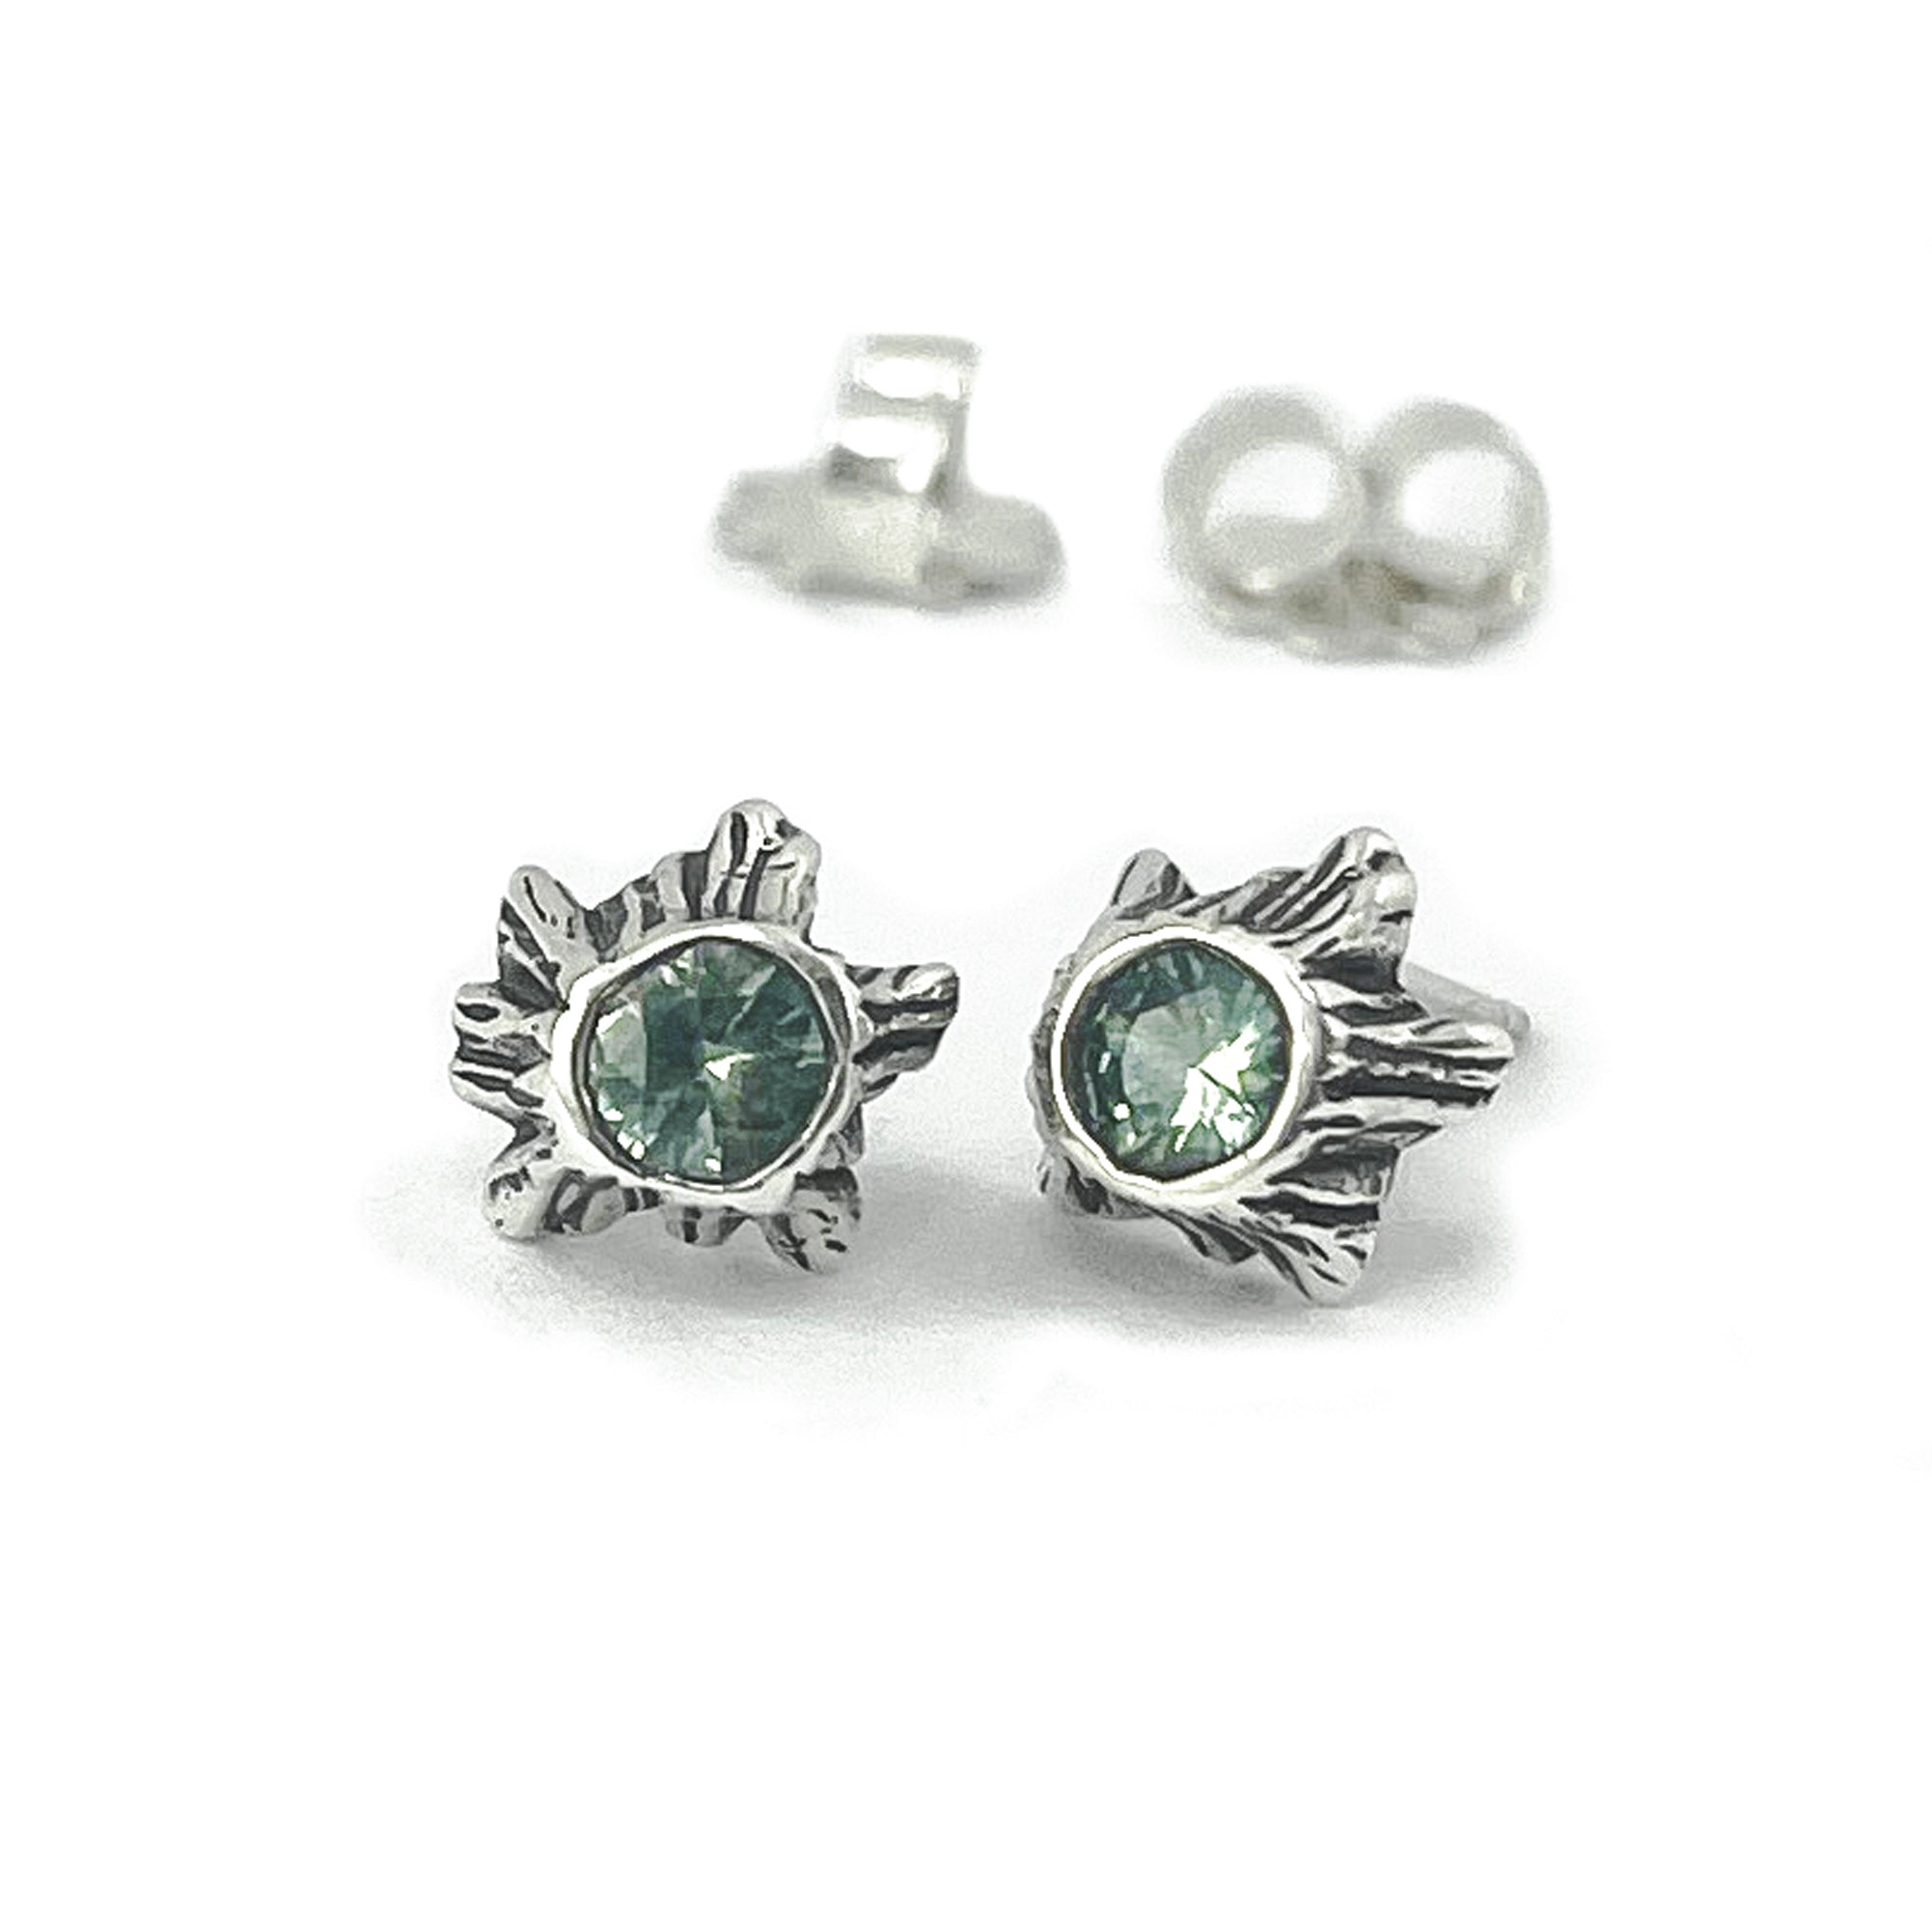 Green Sapphire Tree Trunk Post Earrings - Silver Earrings   7316 - handmade by Beth Millner Jewelry